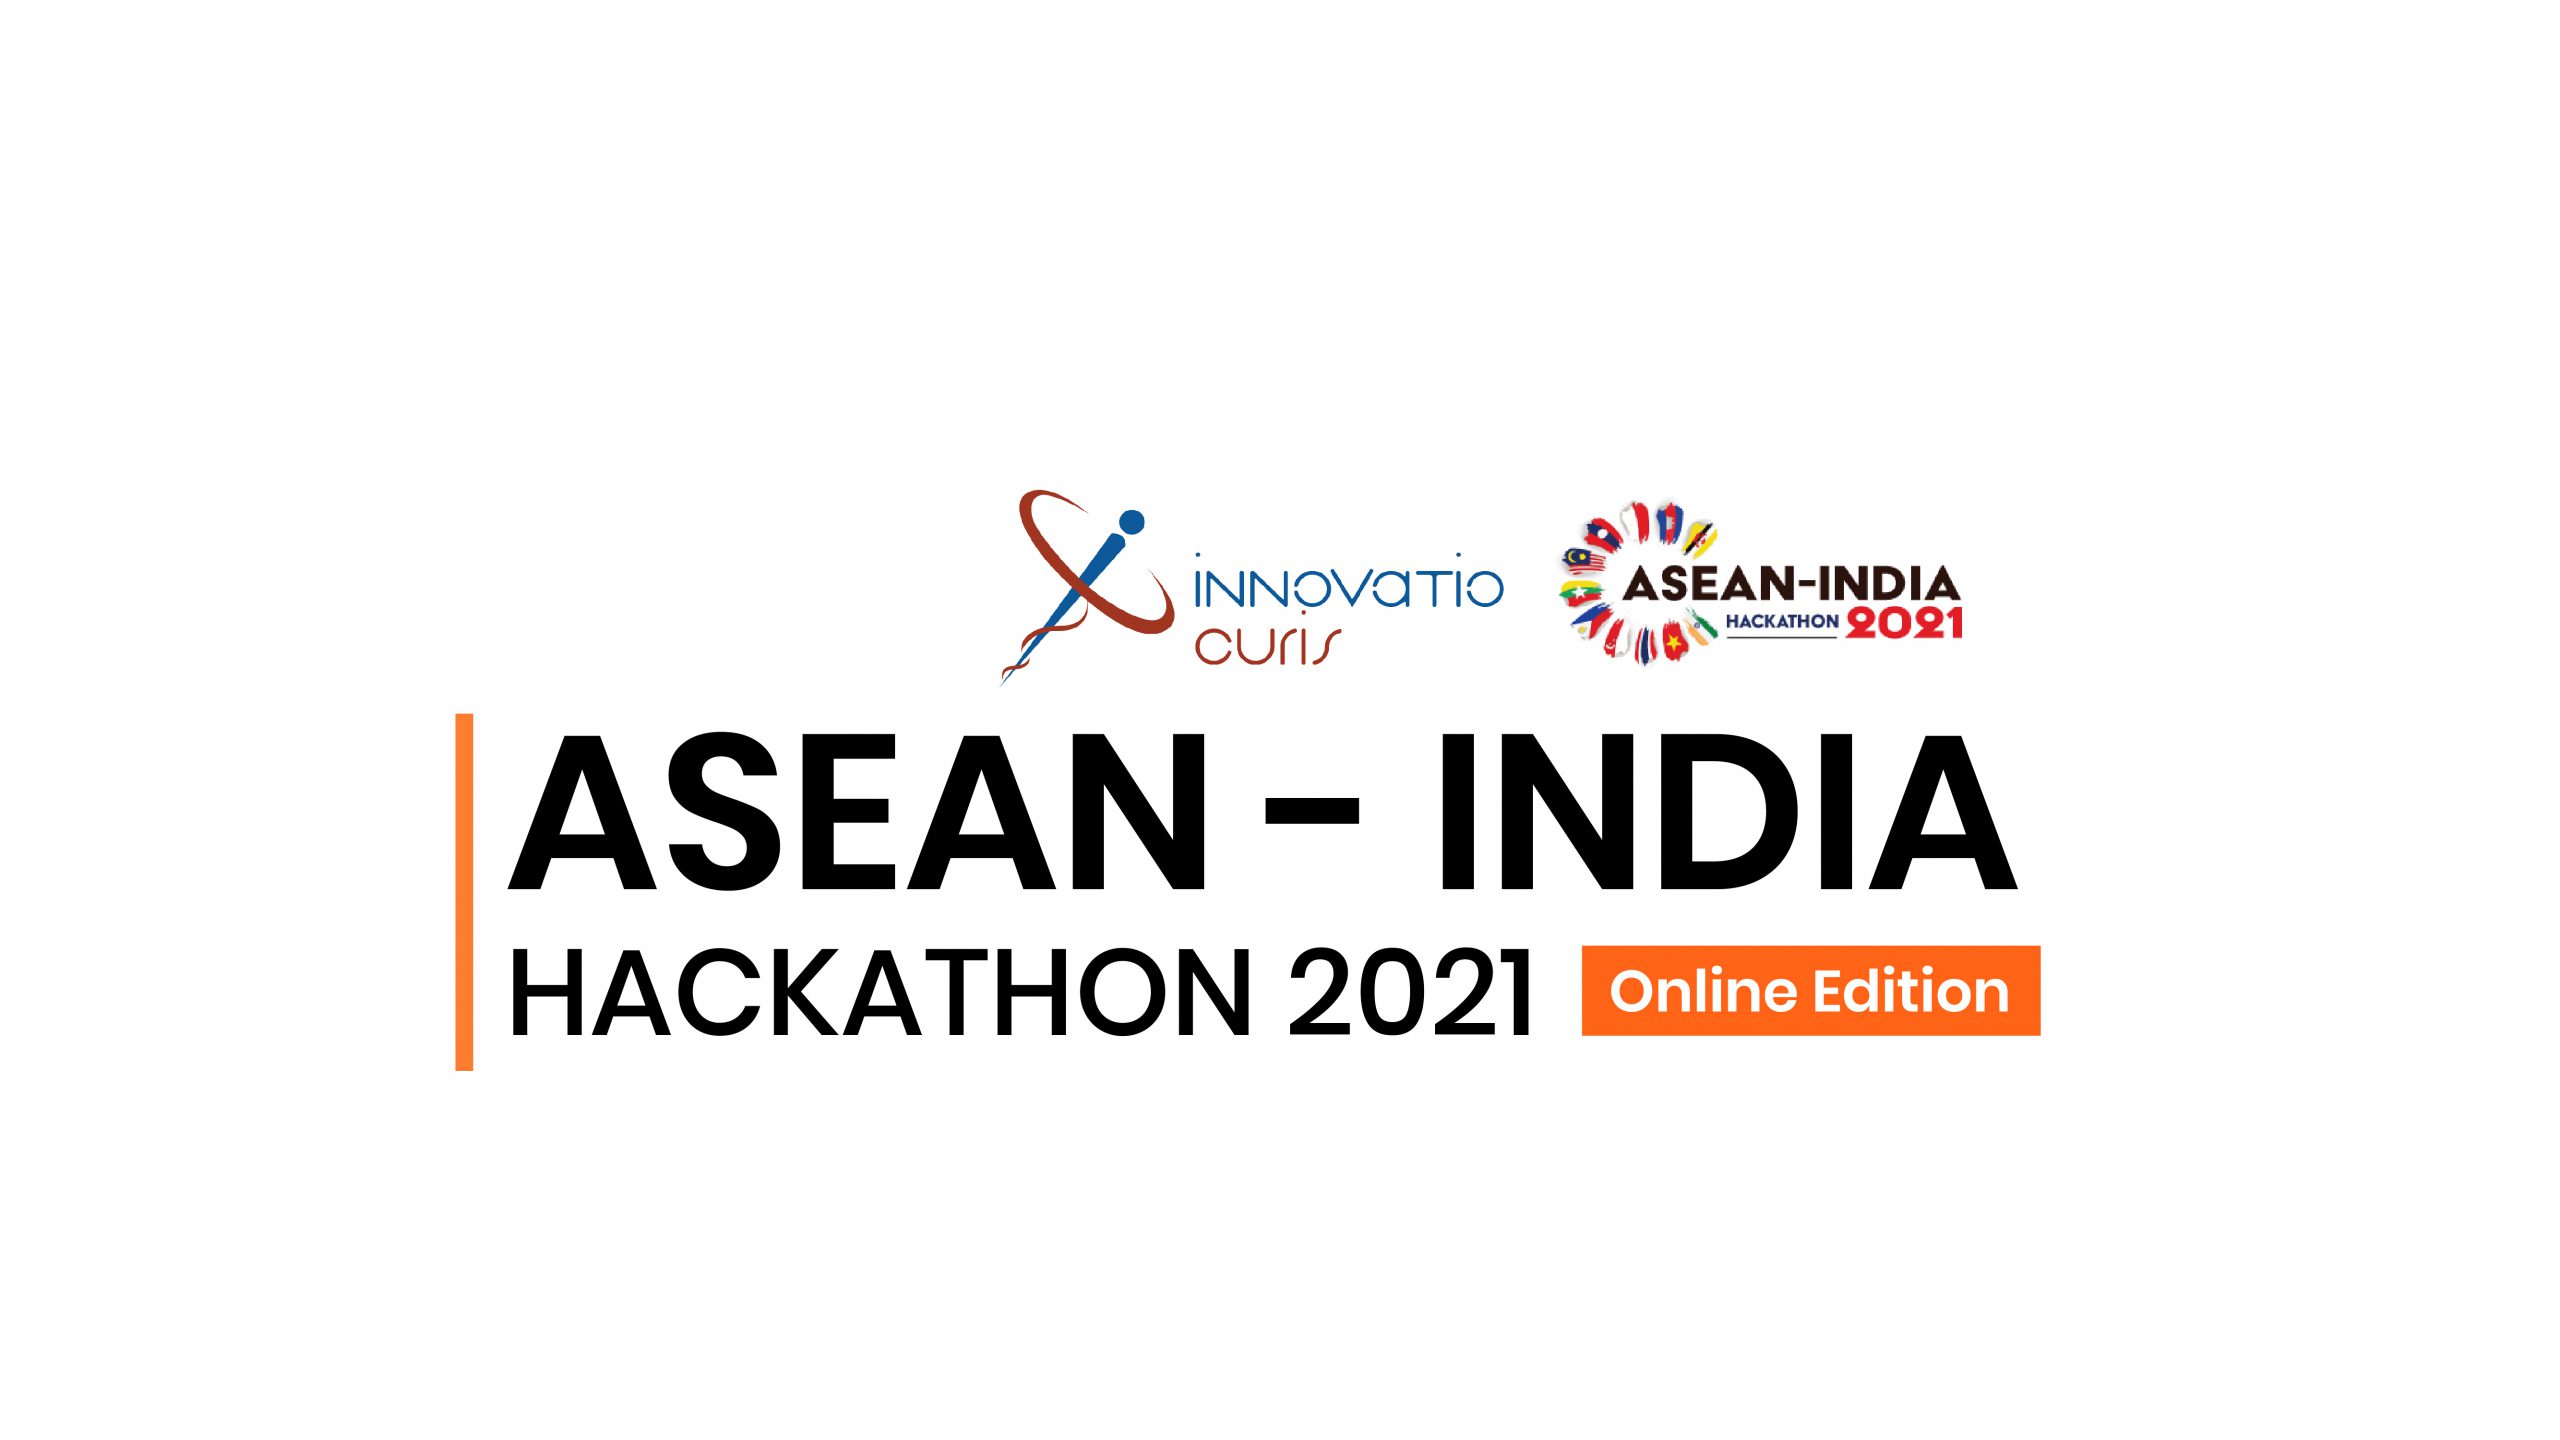 ASEAN INDIA HACKATHON 2021